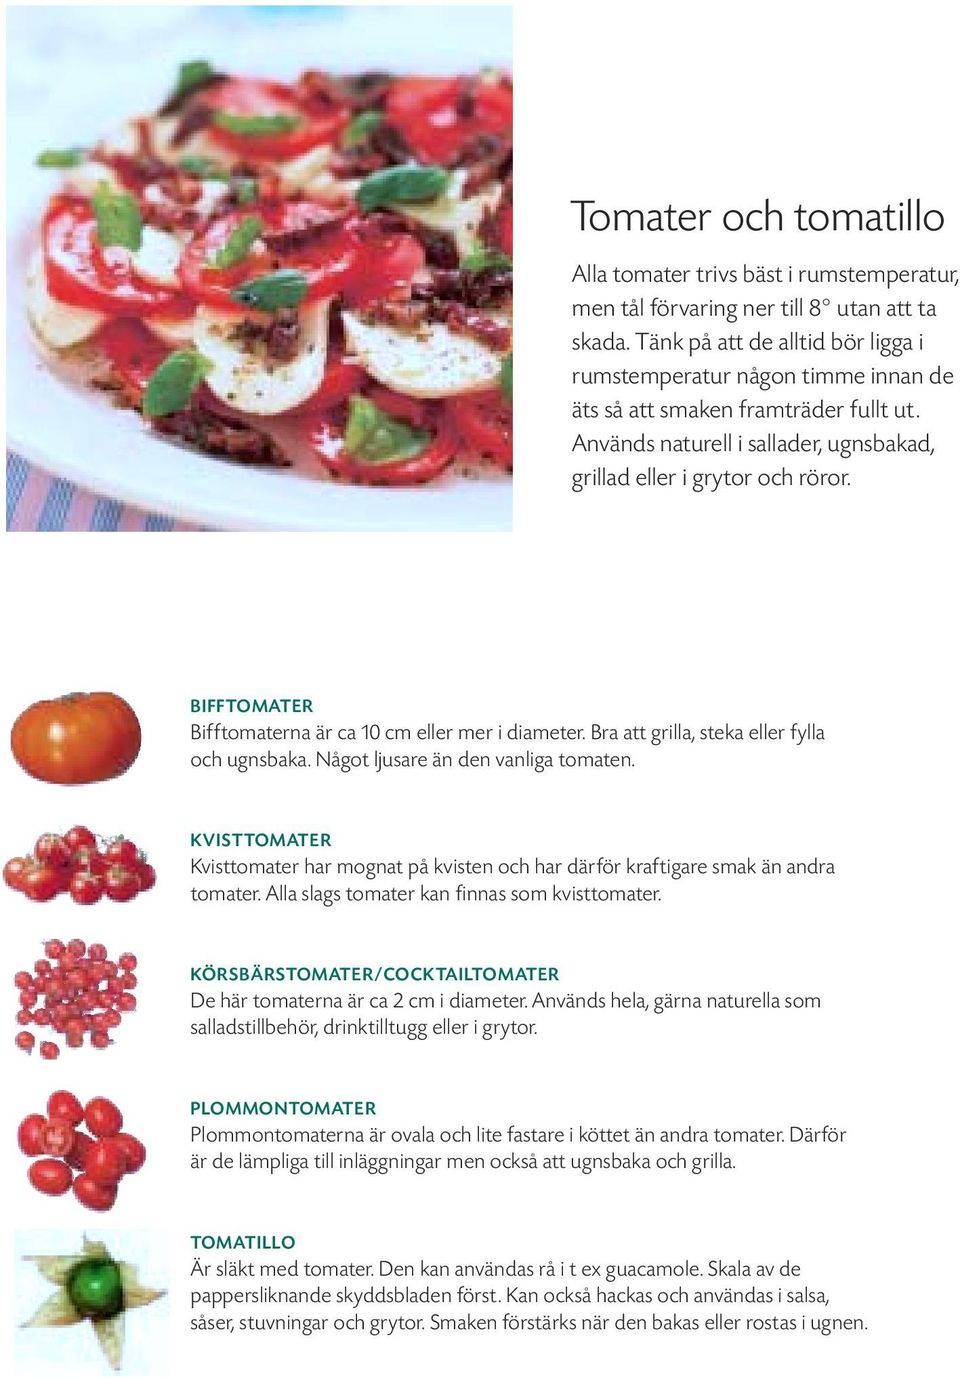 BIFFTOMATER Bifftomaterna är ca 10 cm eller mer i diameter. Bra att grilla, steka eller fylla och ugnsbaka. Något ljusare än den vanliga tomaten.